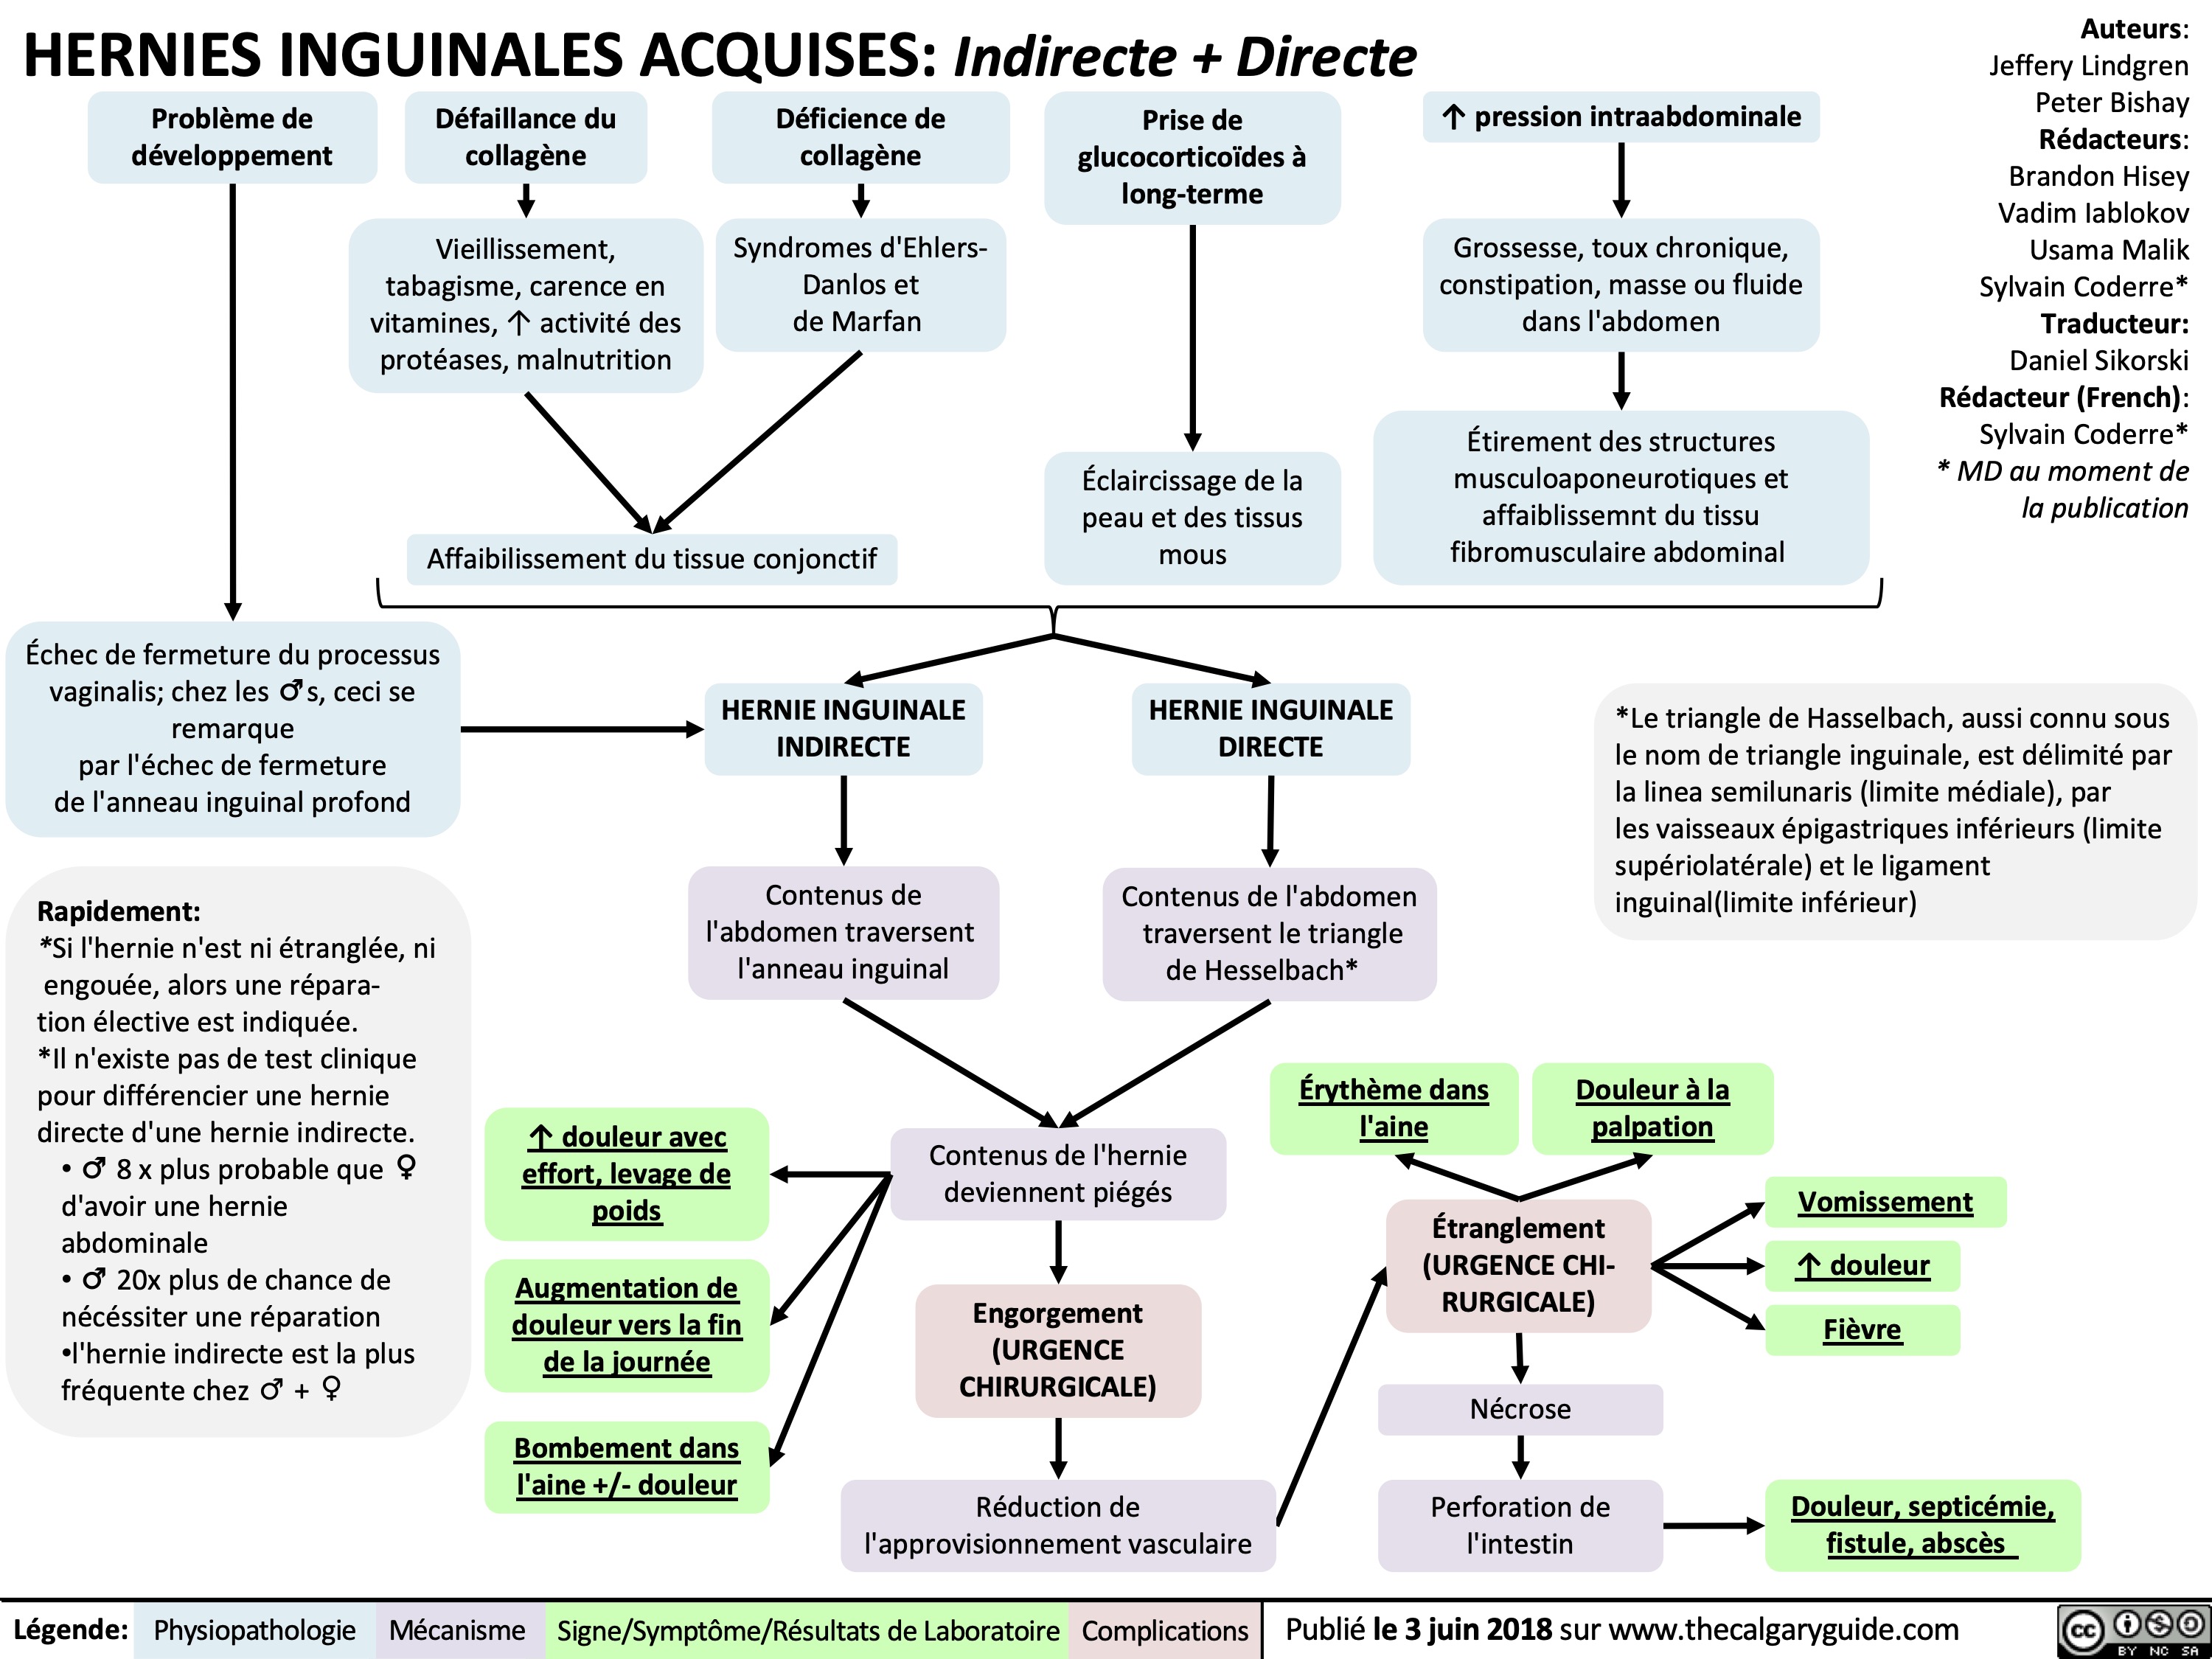 hernies-inguinales-acquises-indirect-directe